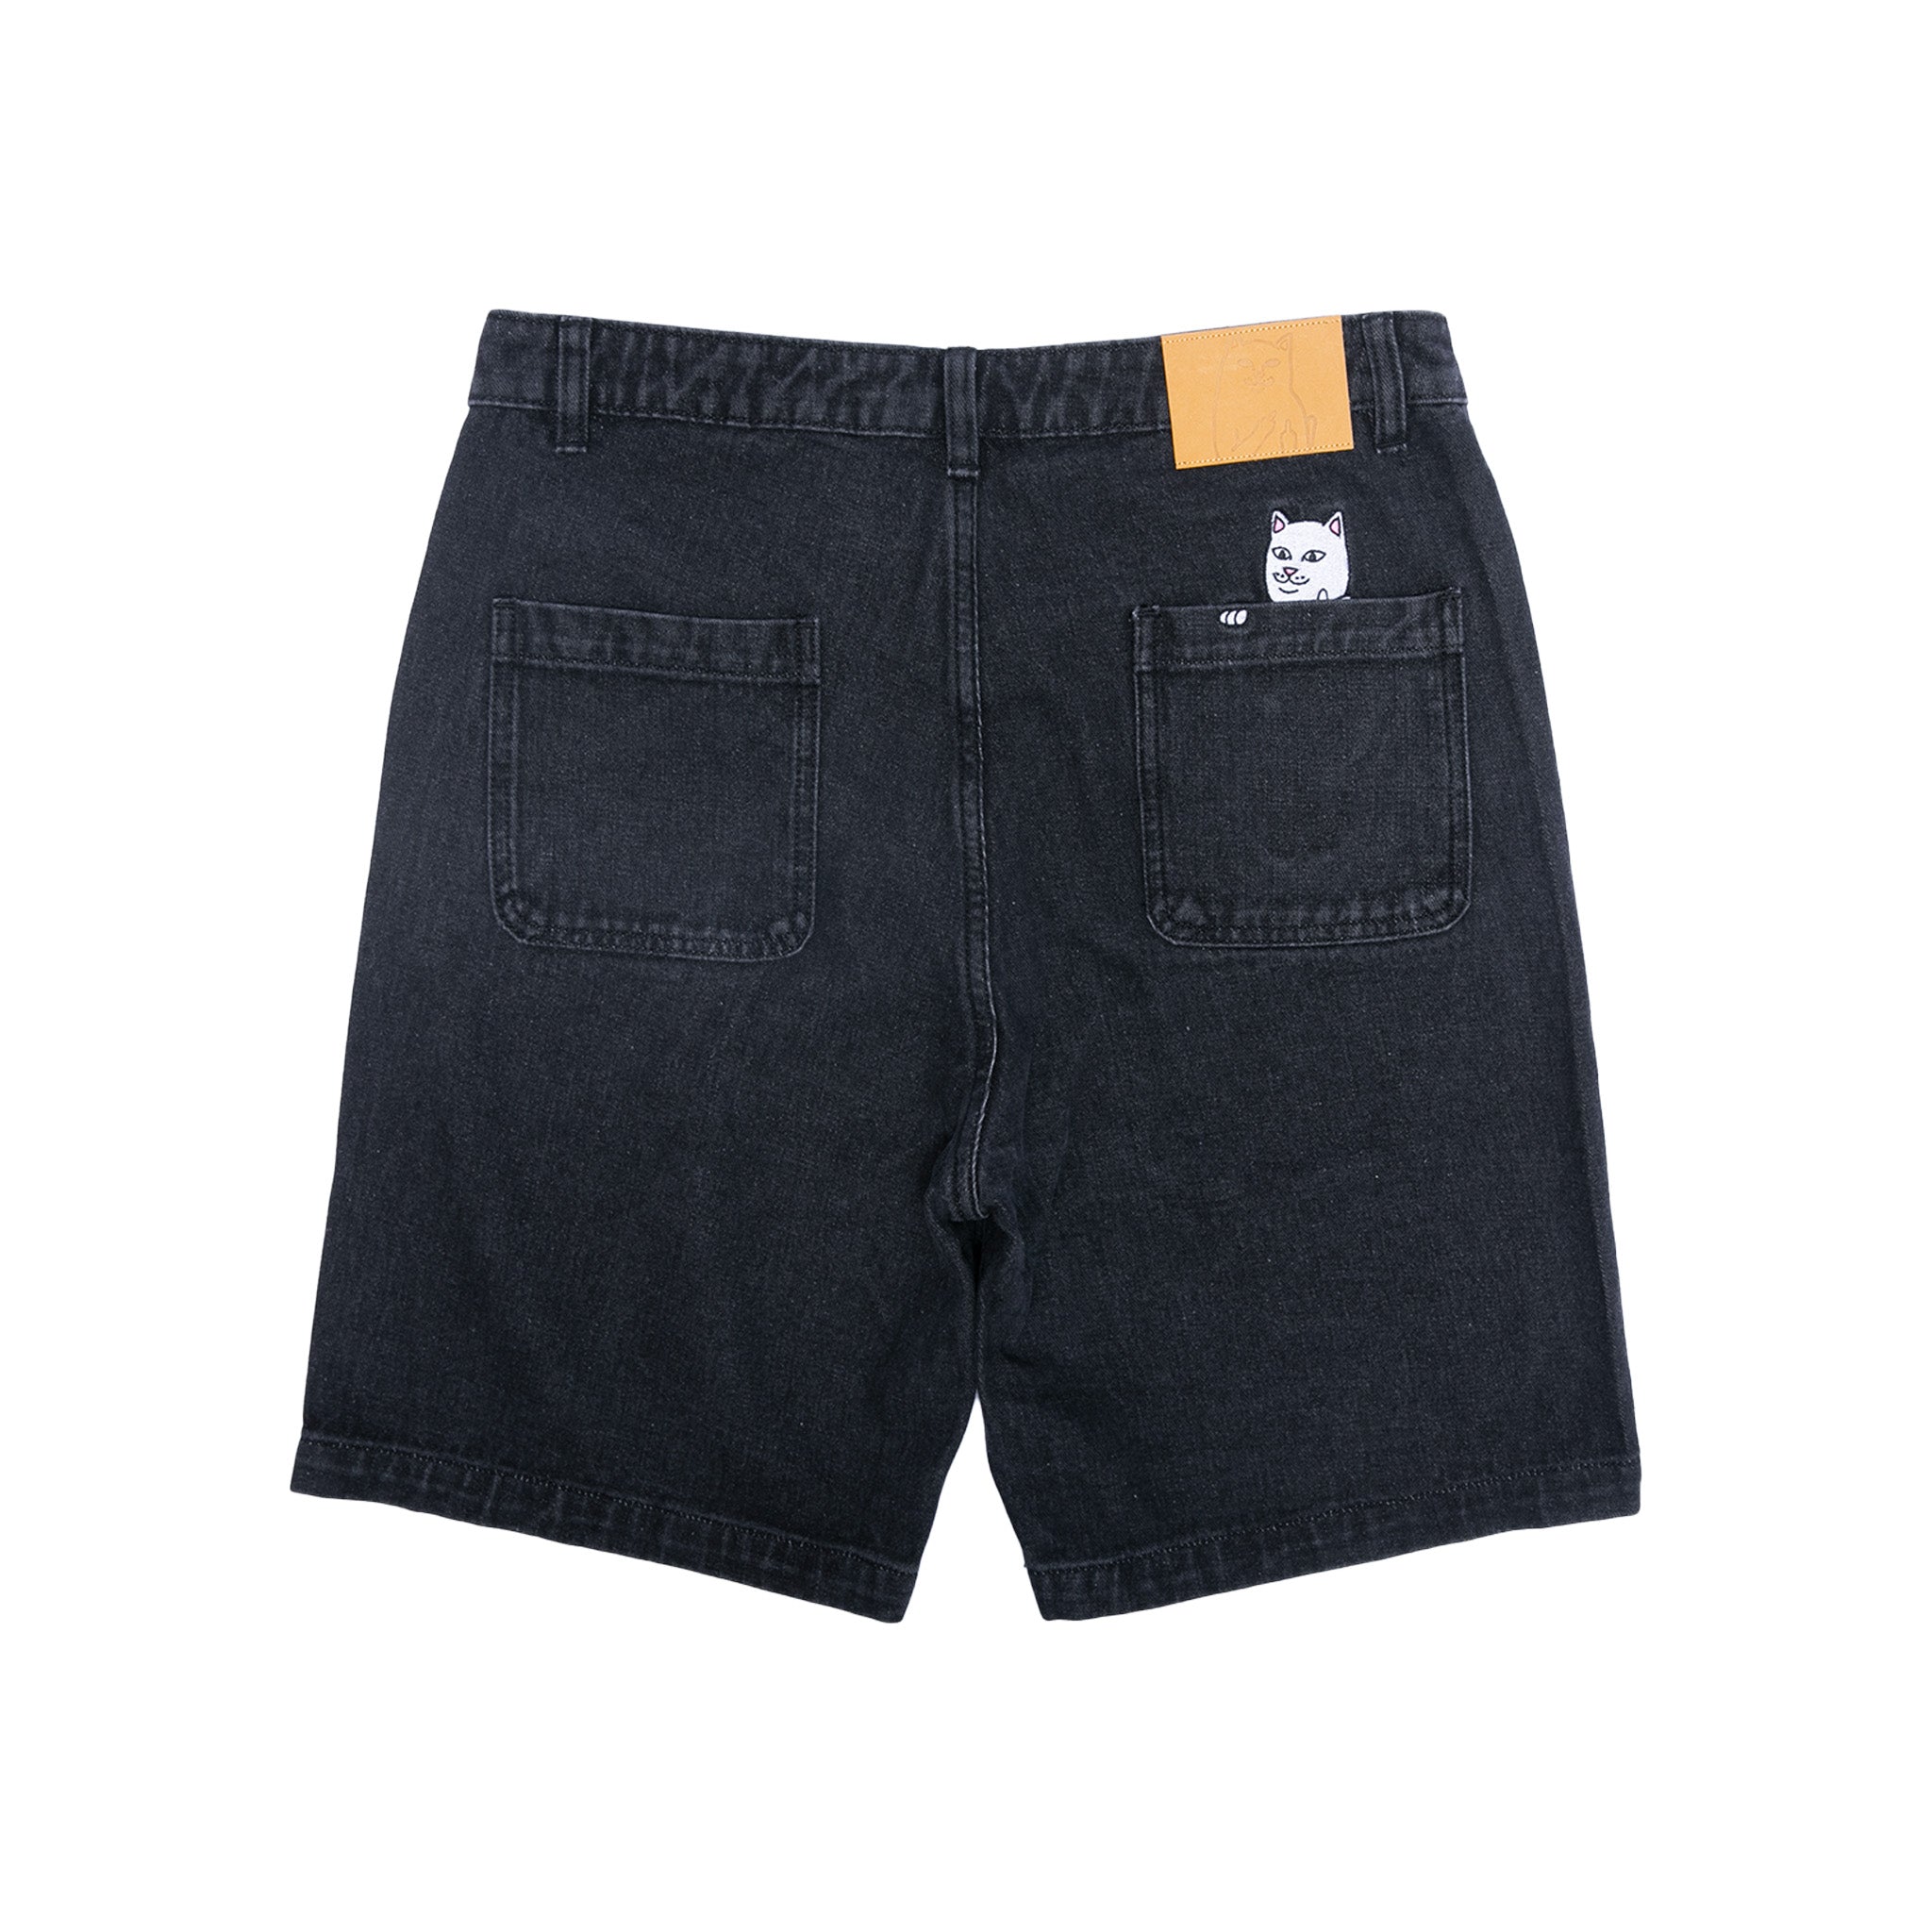 La Brea Denim Shorts (Black Medium Wash)